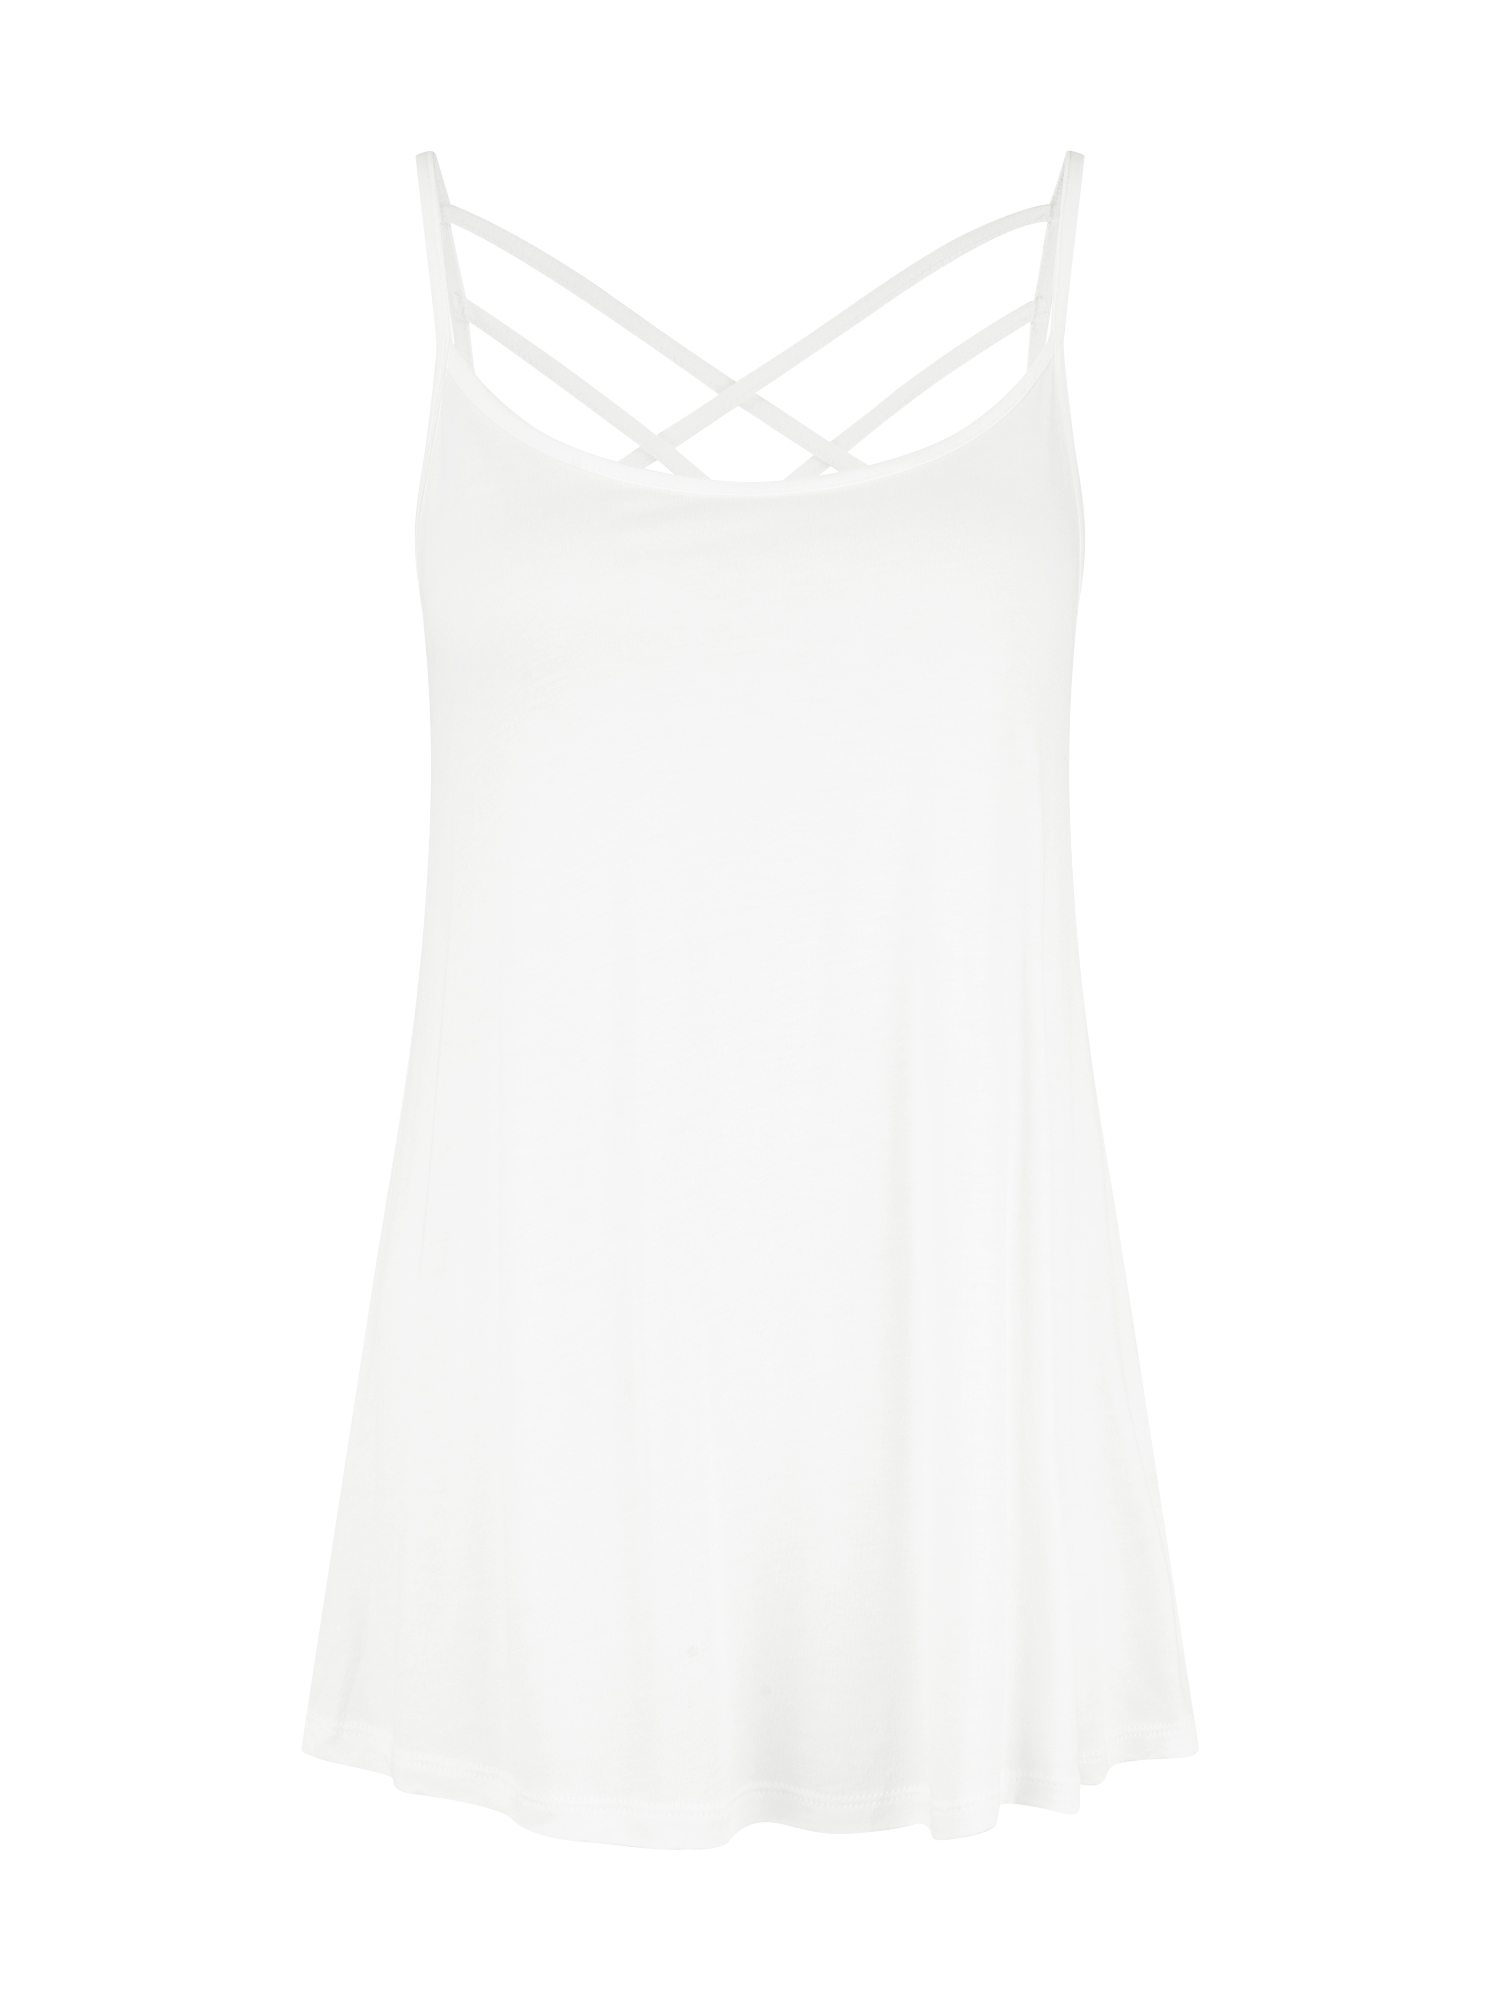 Odzież Kobiety LASCANA Top TIFFY w kolorze Białym 